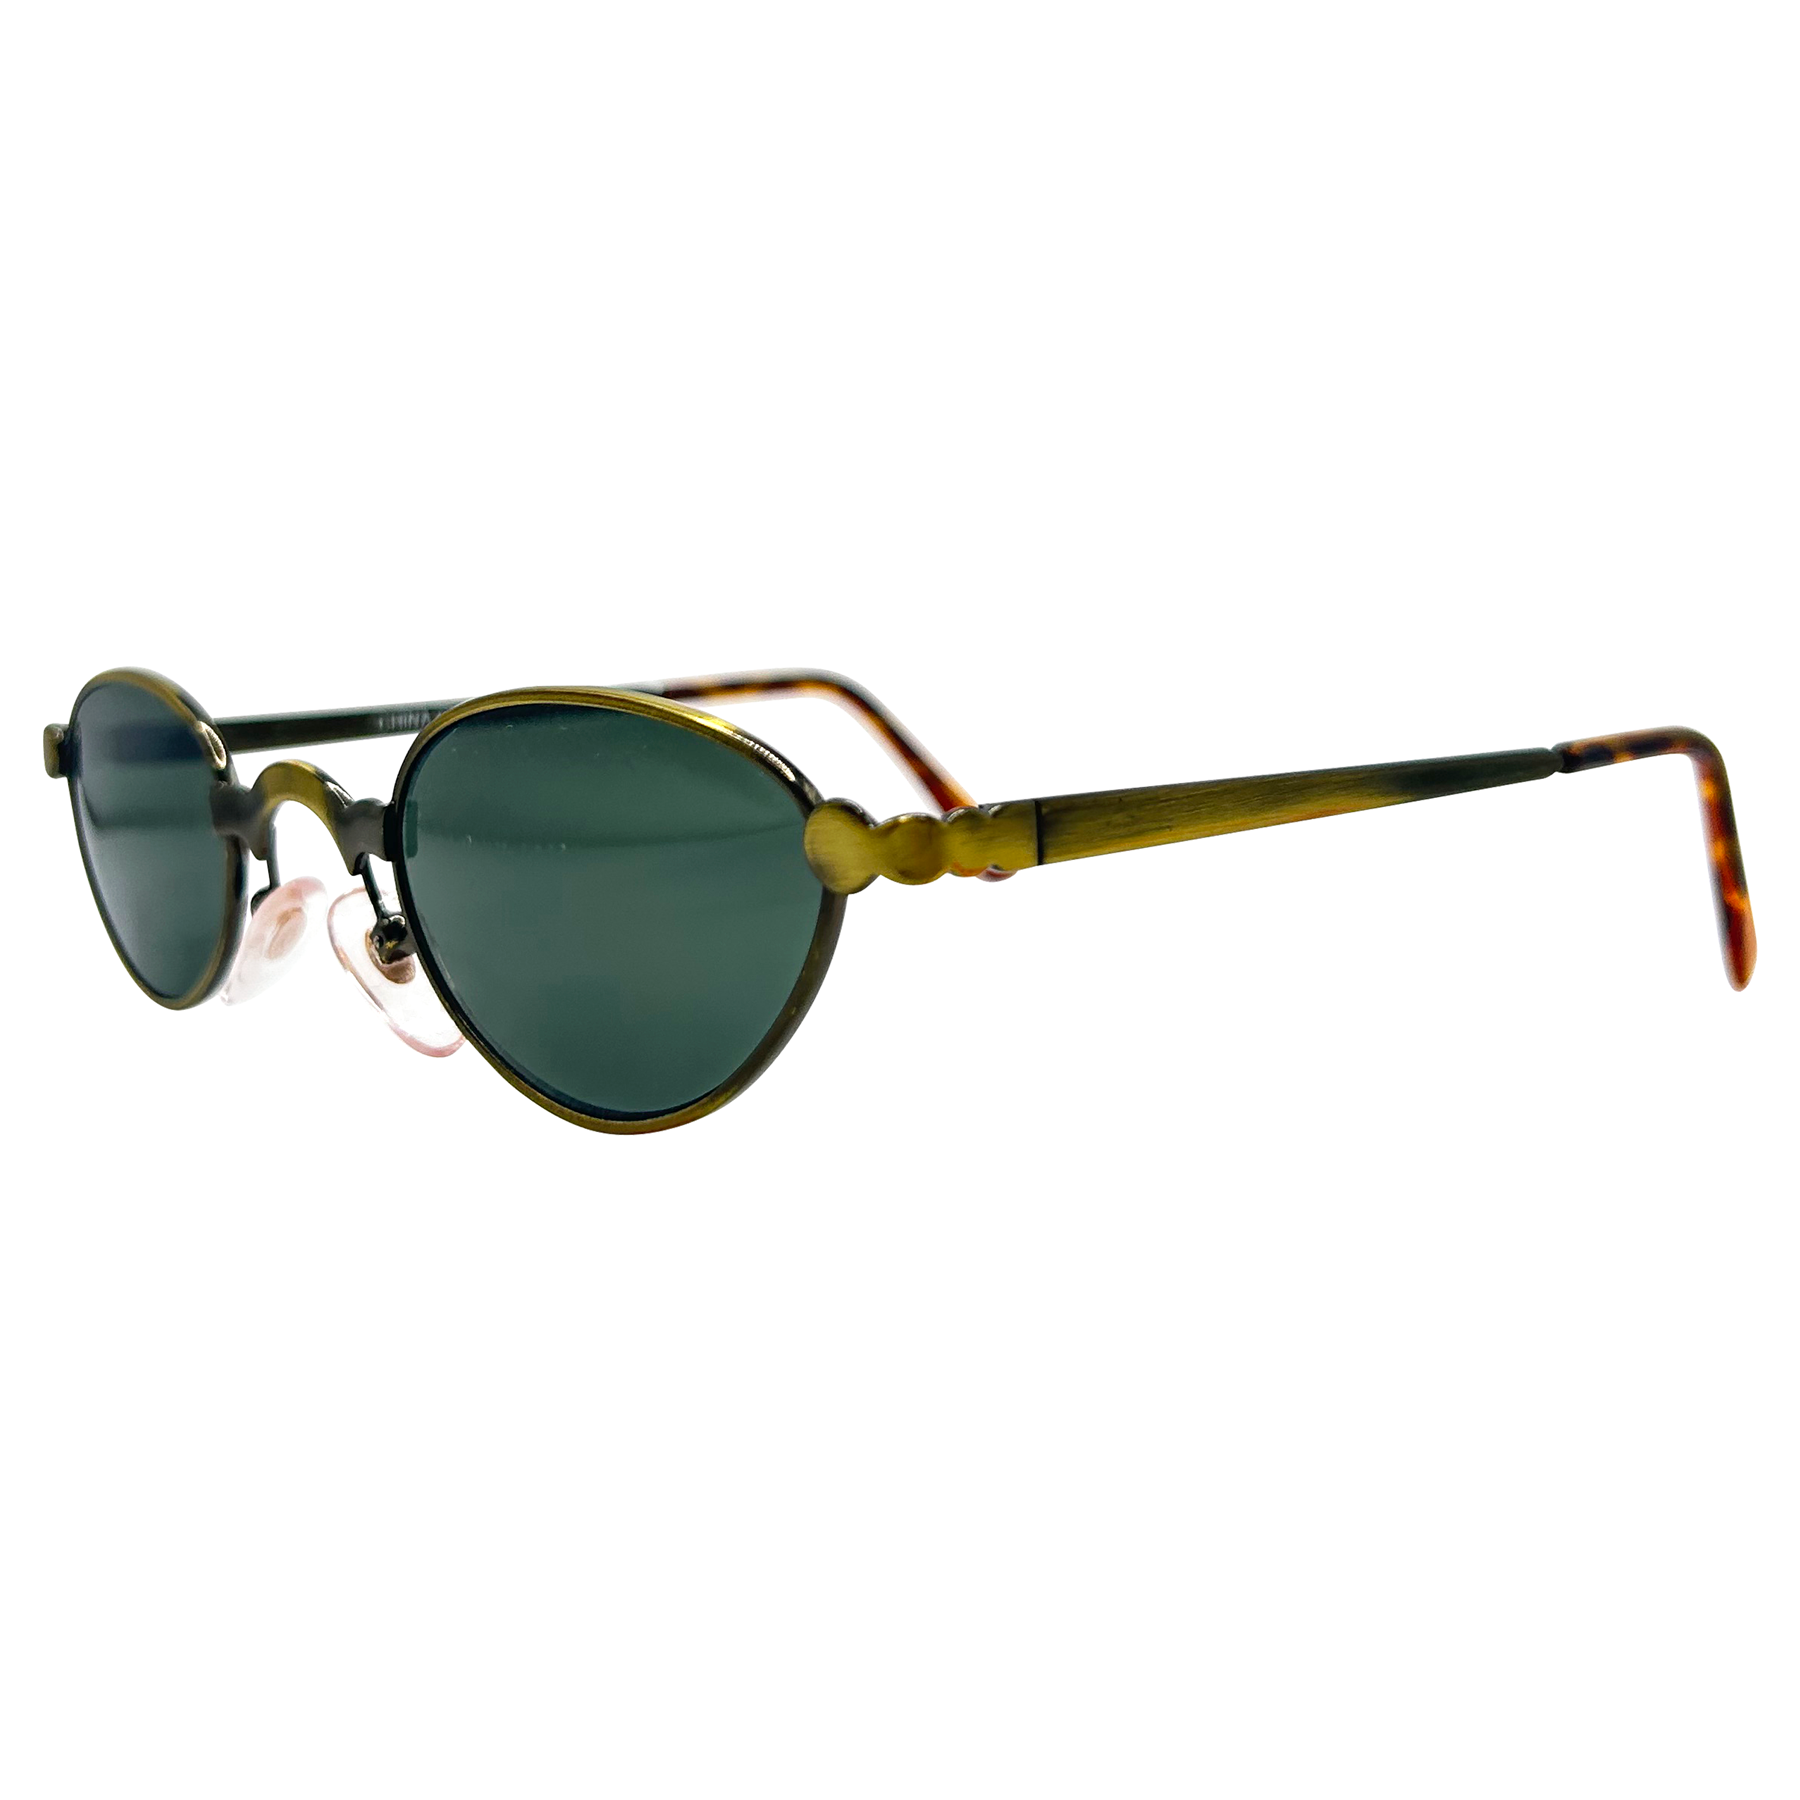 OTIS Micro Industrial 90s Sunglasses